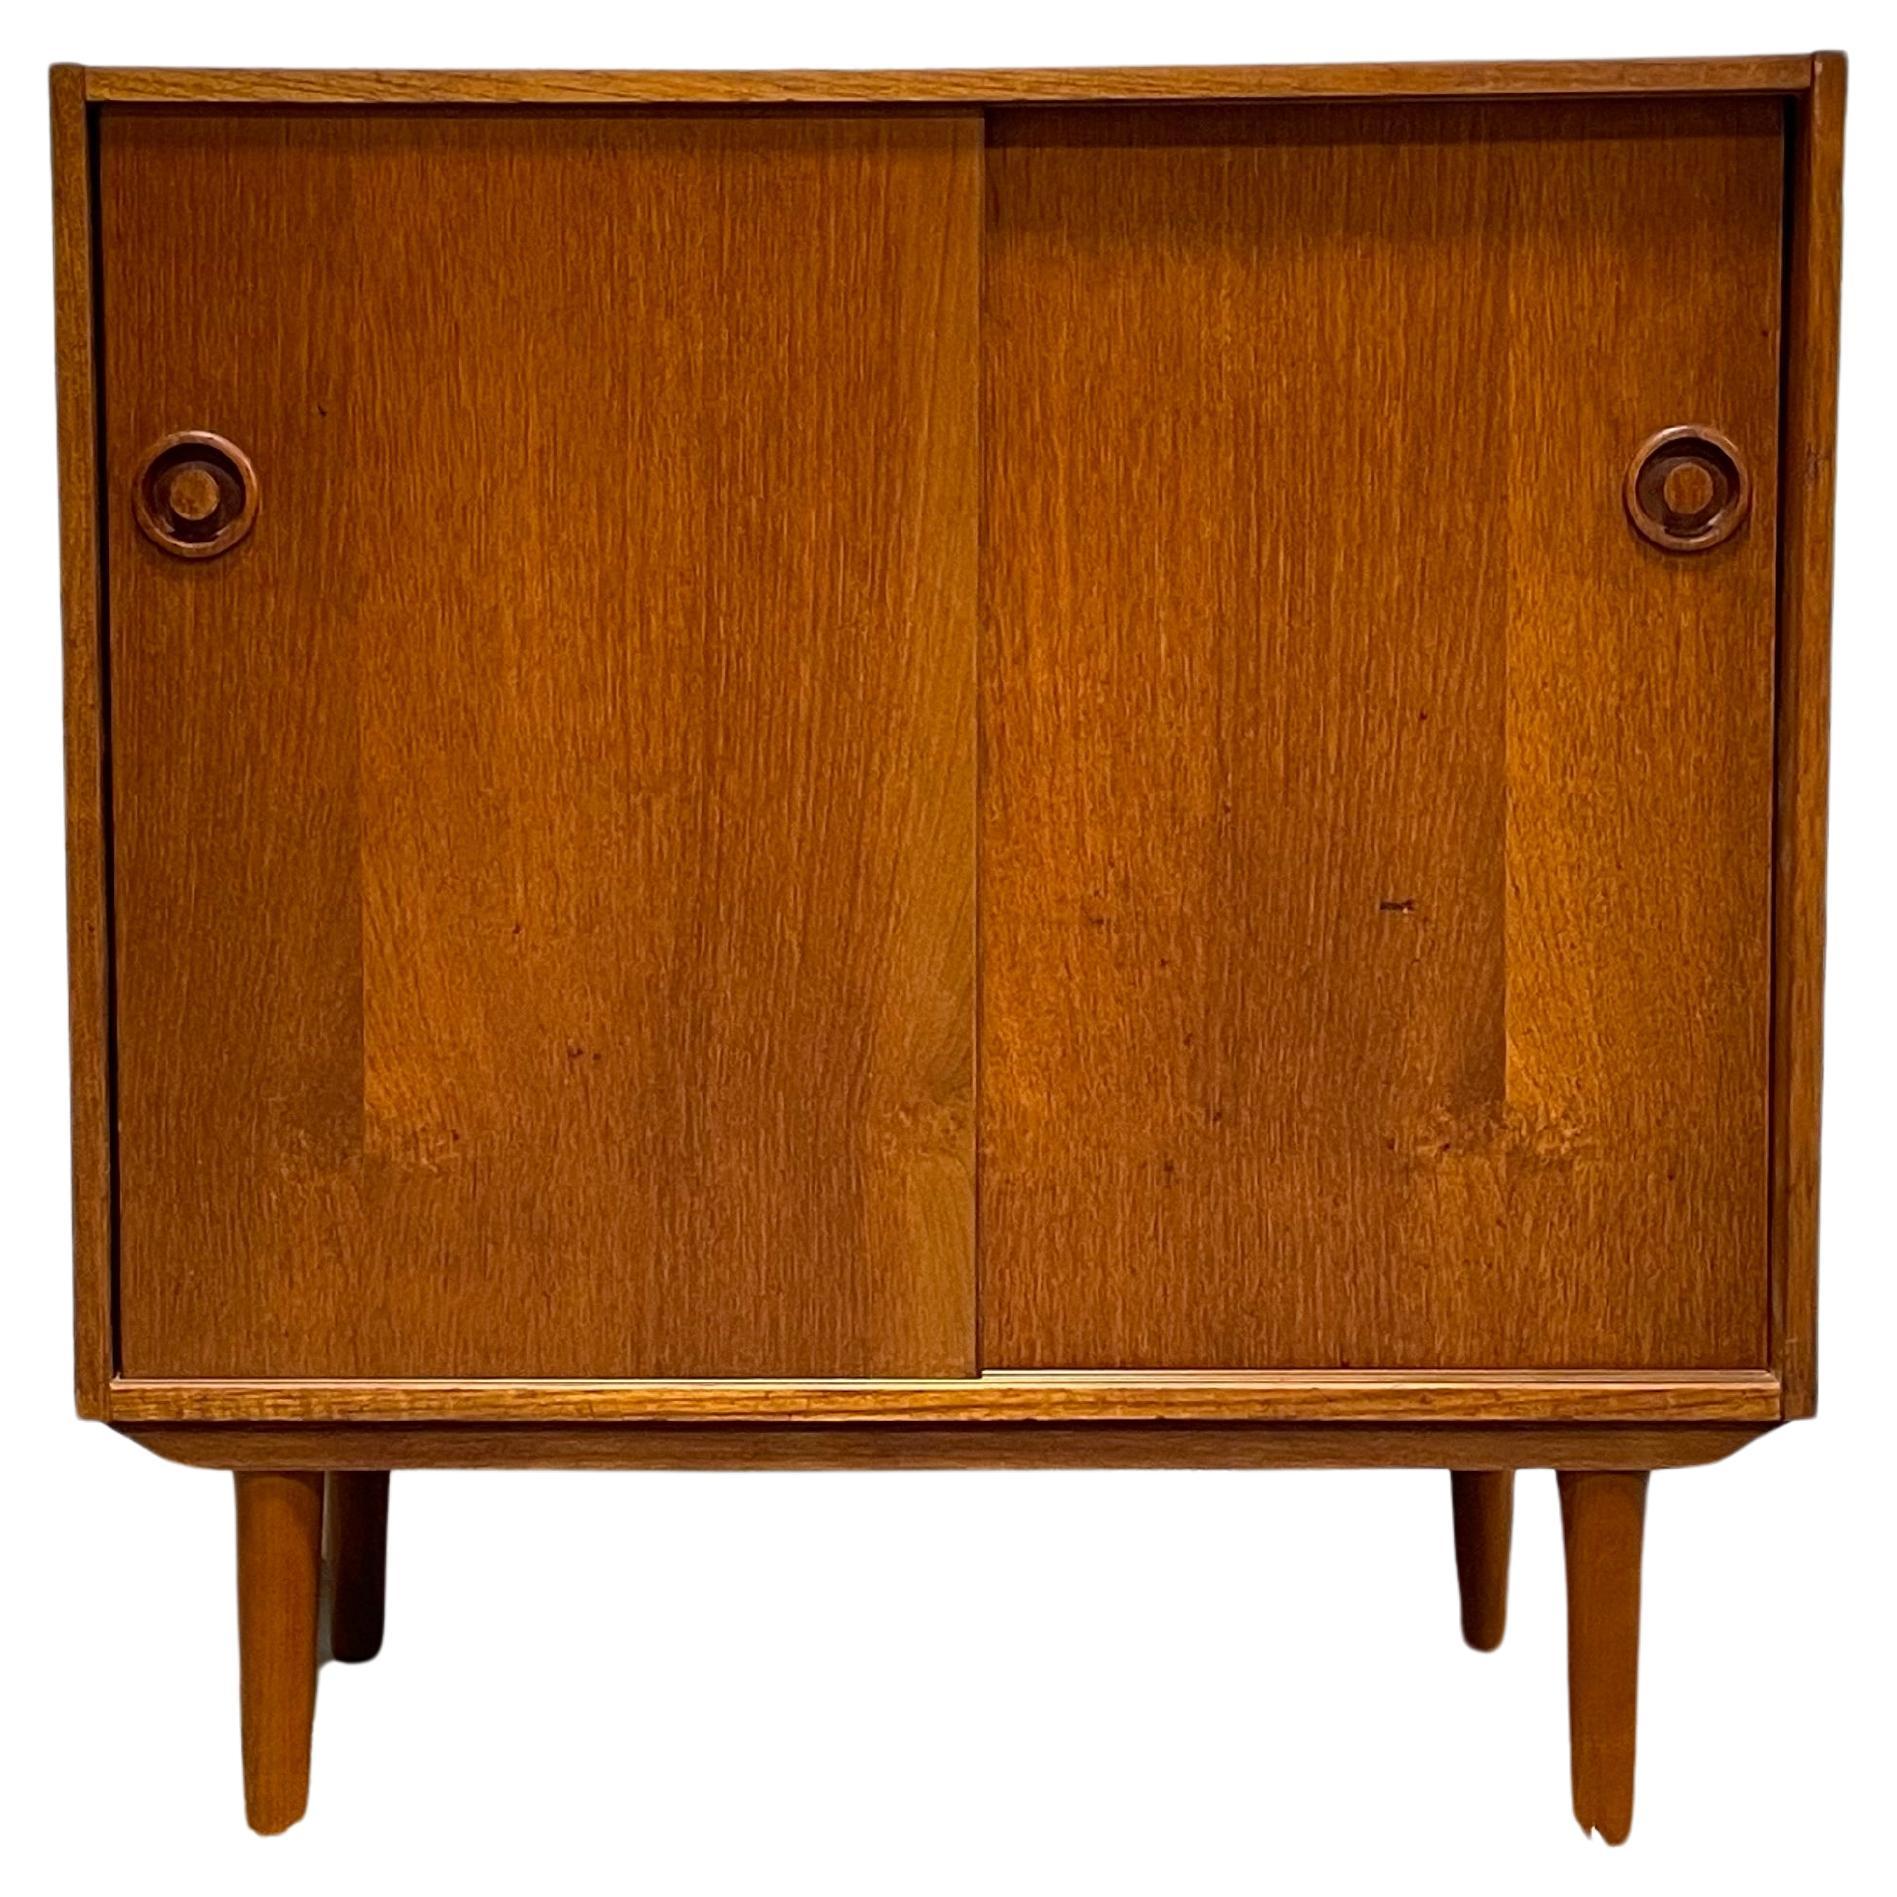 DANISH Mid Century Modern Teak Jr. CREDENZA / STORAGE Cabinet, circa 1960's For Sale